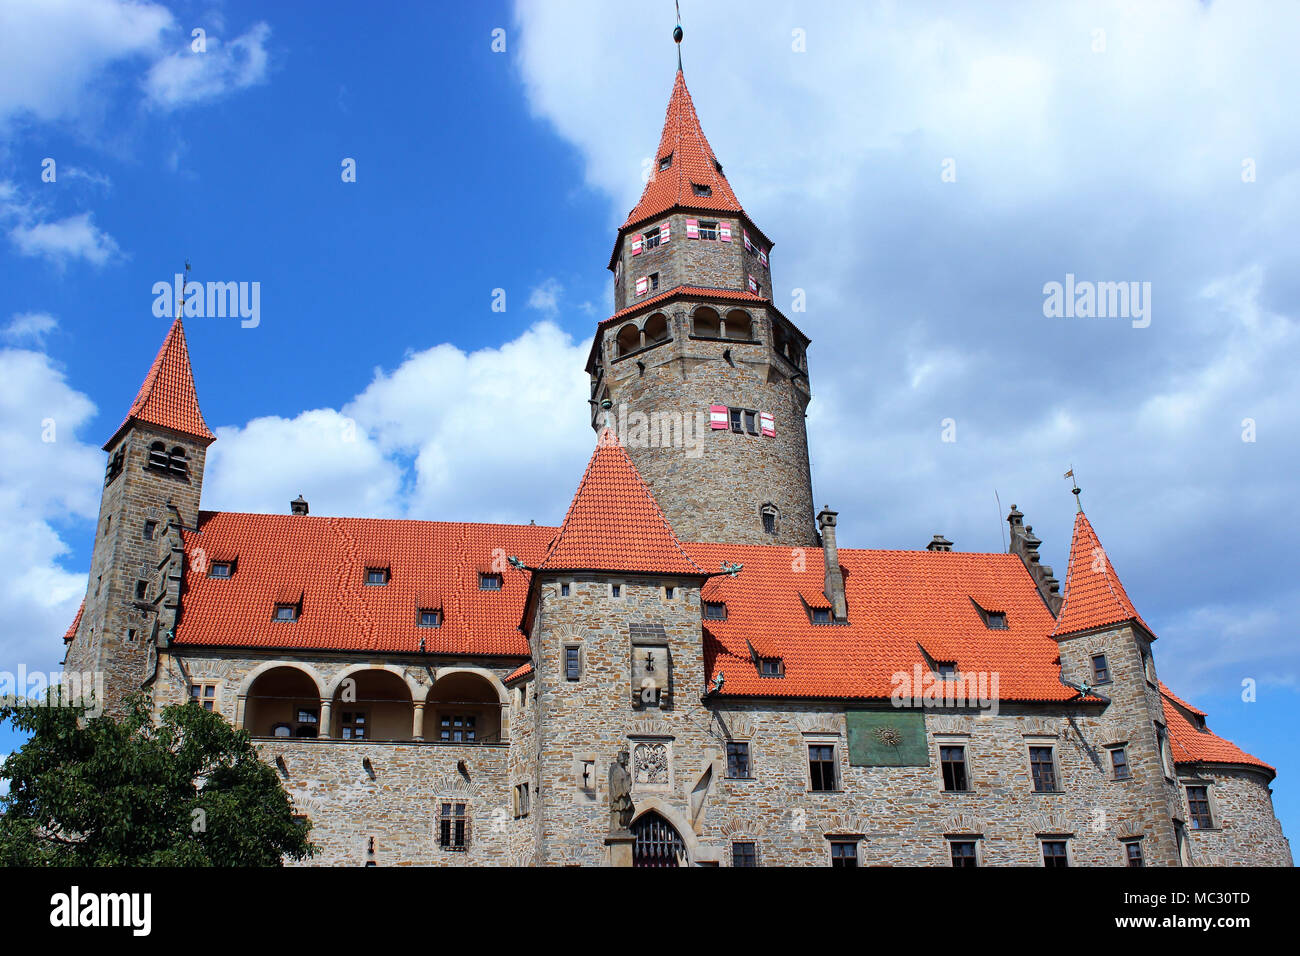 Sur la photo domine le château de Bouzov et dans le contexte vous pouvez voir le ciel bleu avec des nuages. Banque D'Images